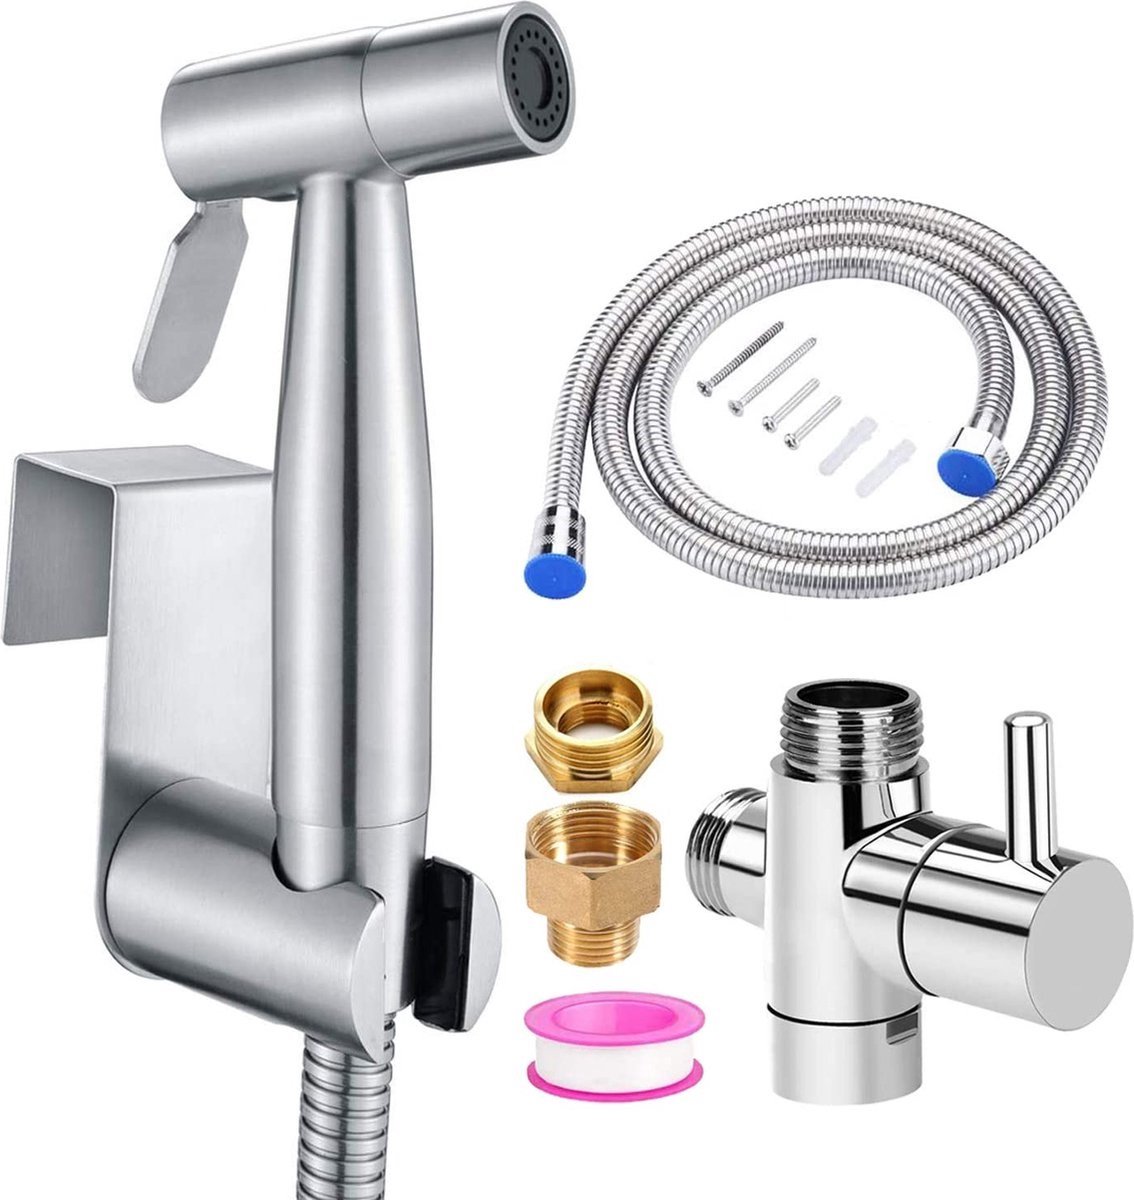 Bidet - Handdouche/kraan - Water sproeier/spray - Toilet/badkamer - Montage set - 1,5M slang - Multifunctioneel - RVS – Zilver - Merkloos